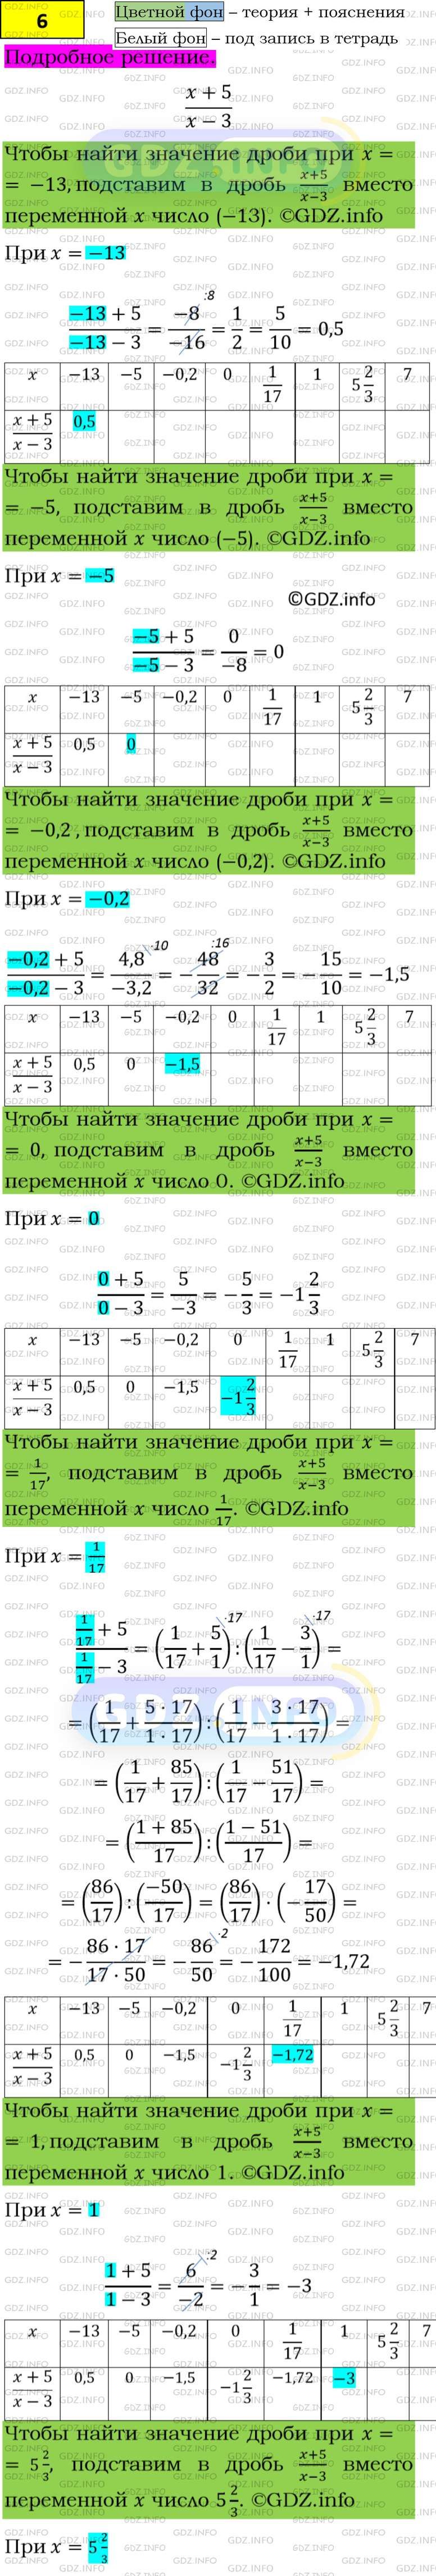 Фото подробного решения: Номер задания №6 из ГДЗ по Алгебре 8 класс: Макарычев Ю.Н.